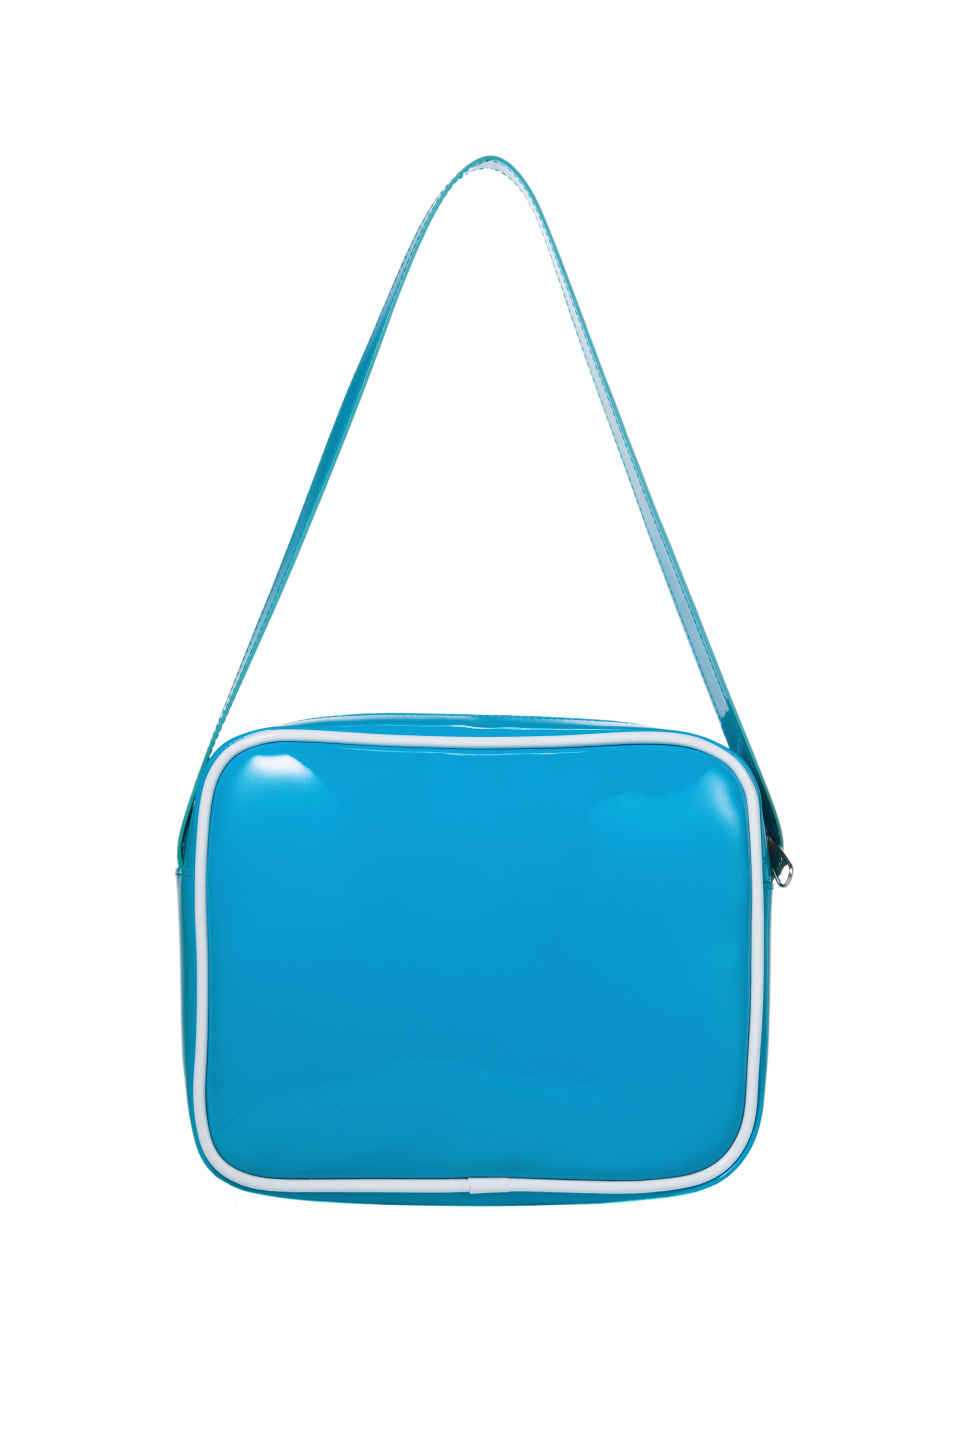 이미스(EMIS) ENAMEL SHOULDER BAG WITH COIN PURSE SET-LIGHT BLUE